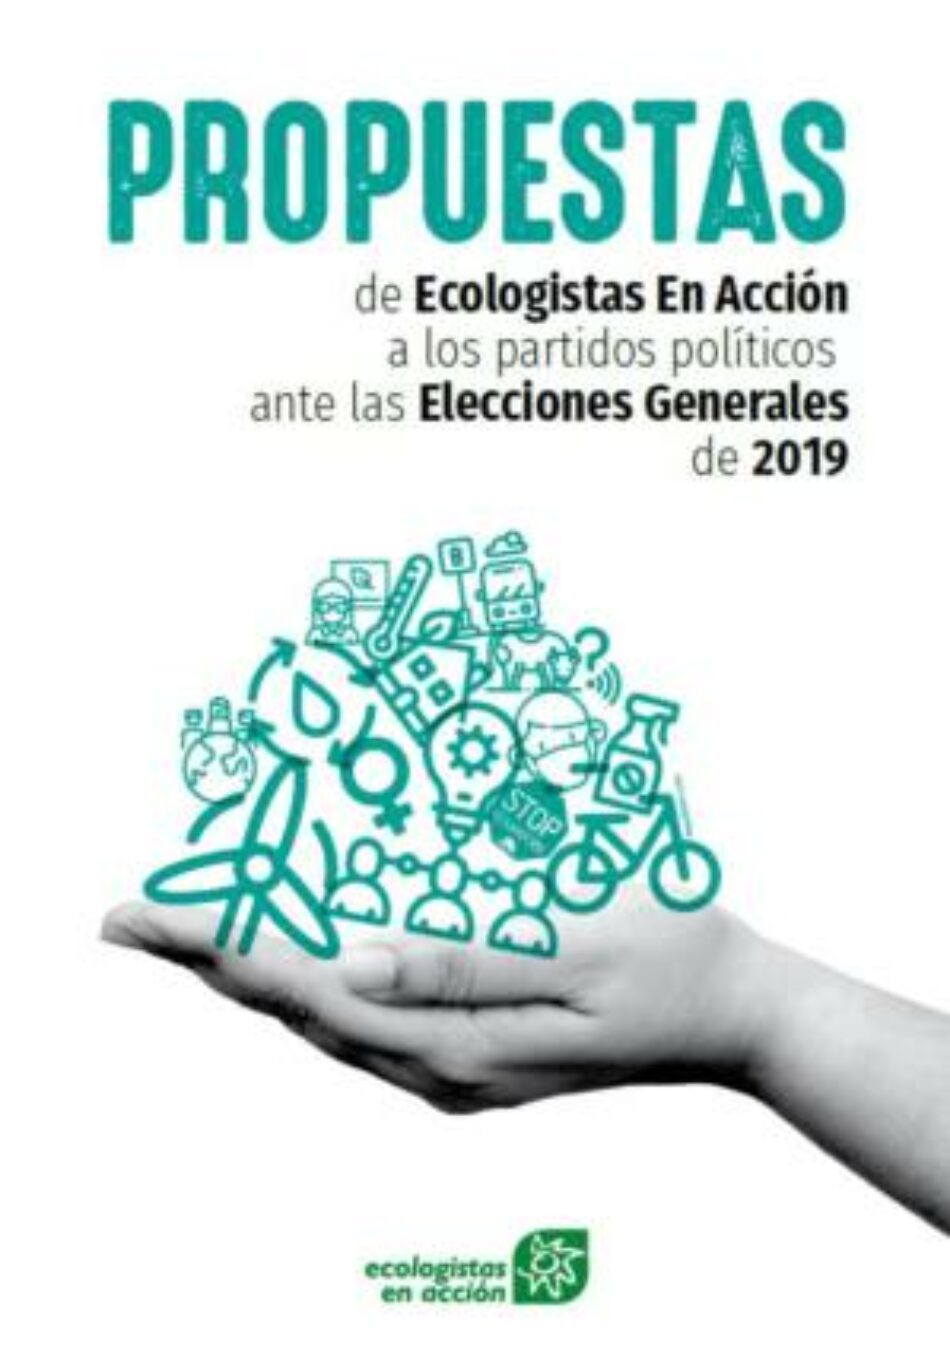 Ecologistas en Acción presenta sus propuestas para los partidos políticos ante las próximas elecciones generales del 28 de abril: «Propuestas para salvar el planeta»